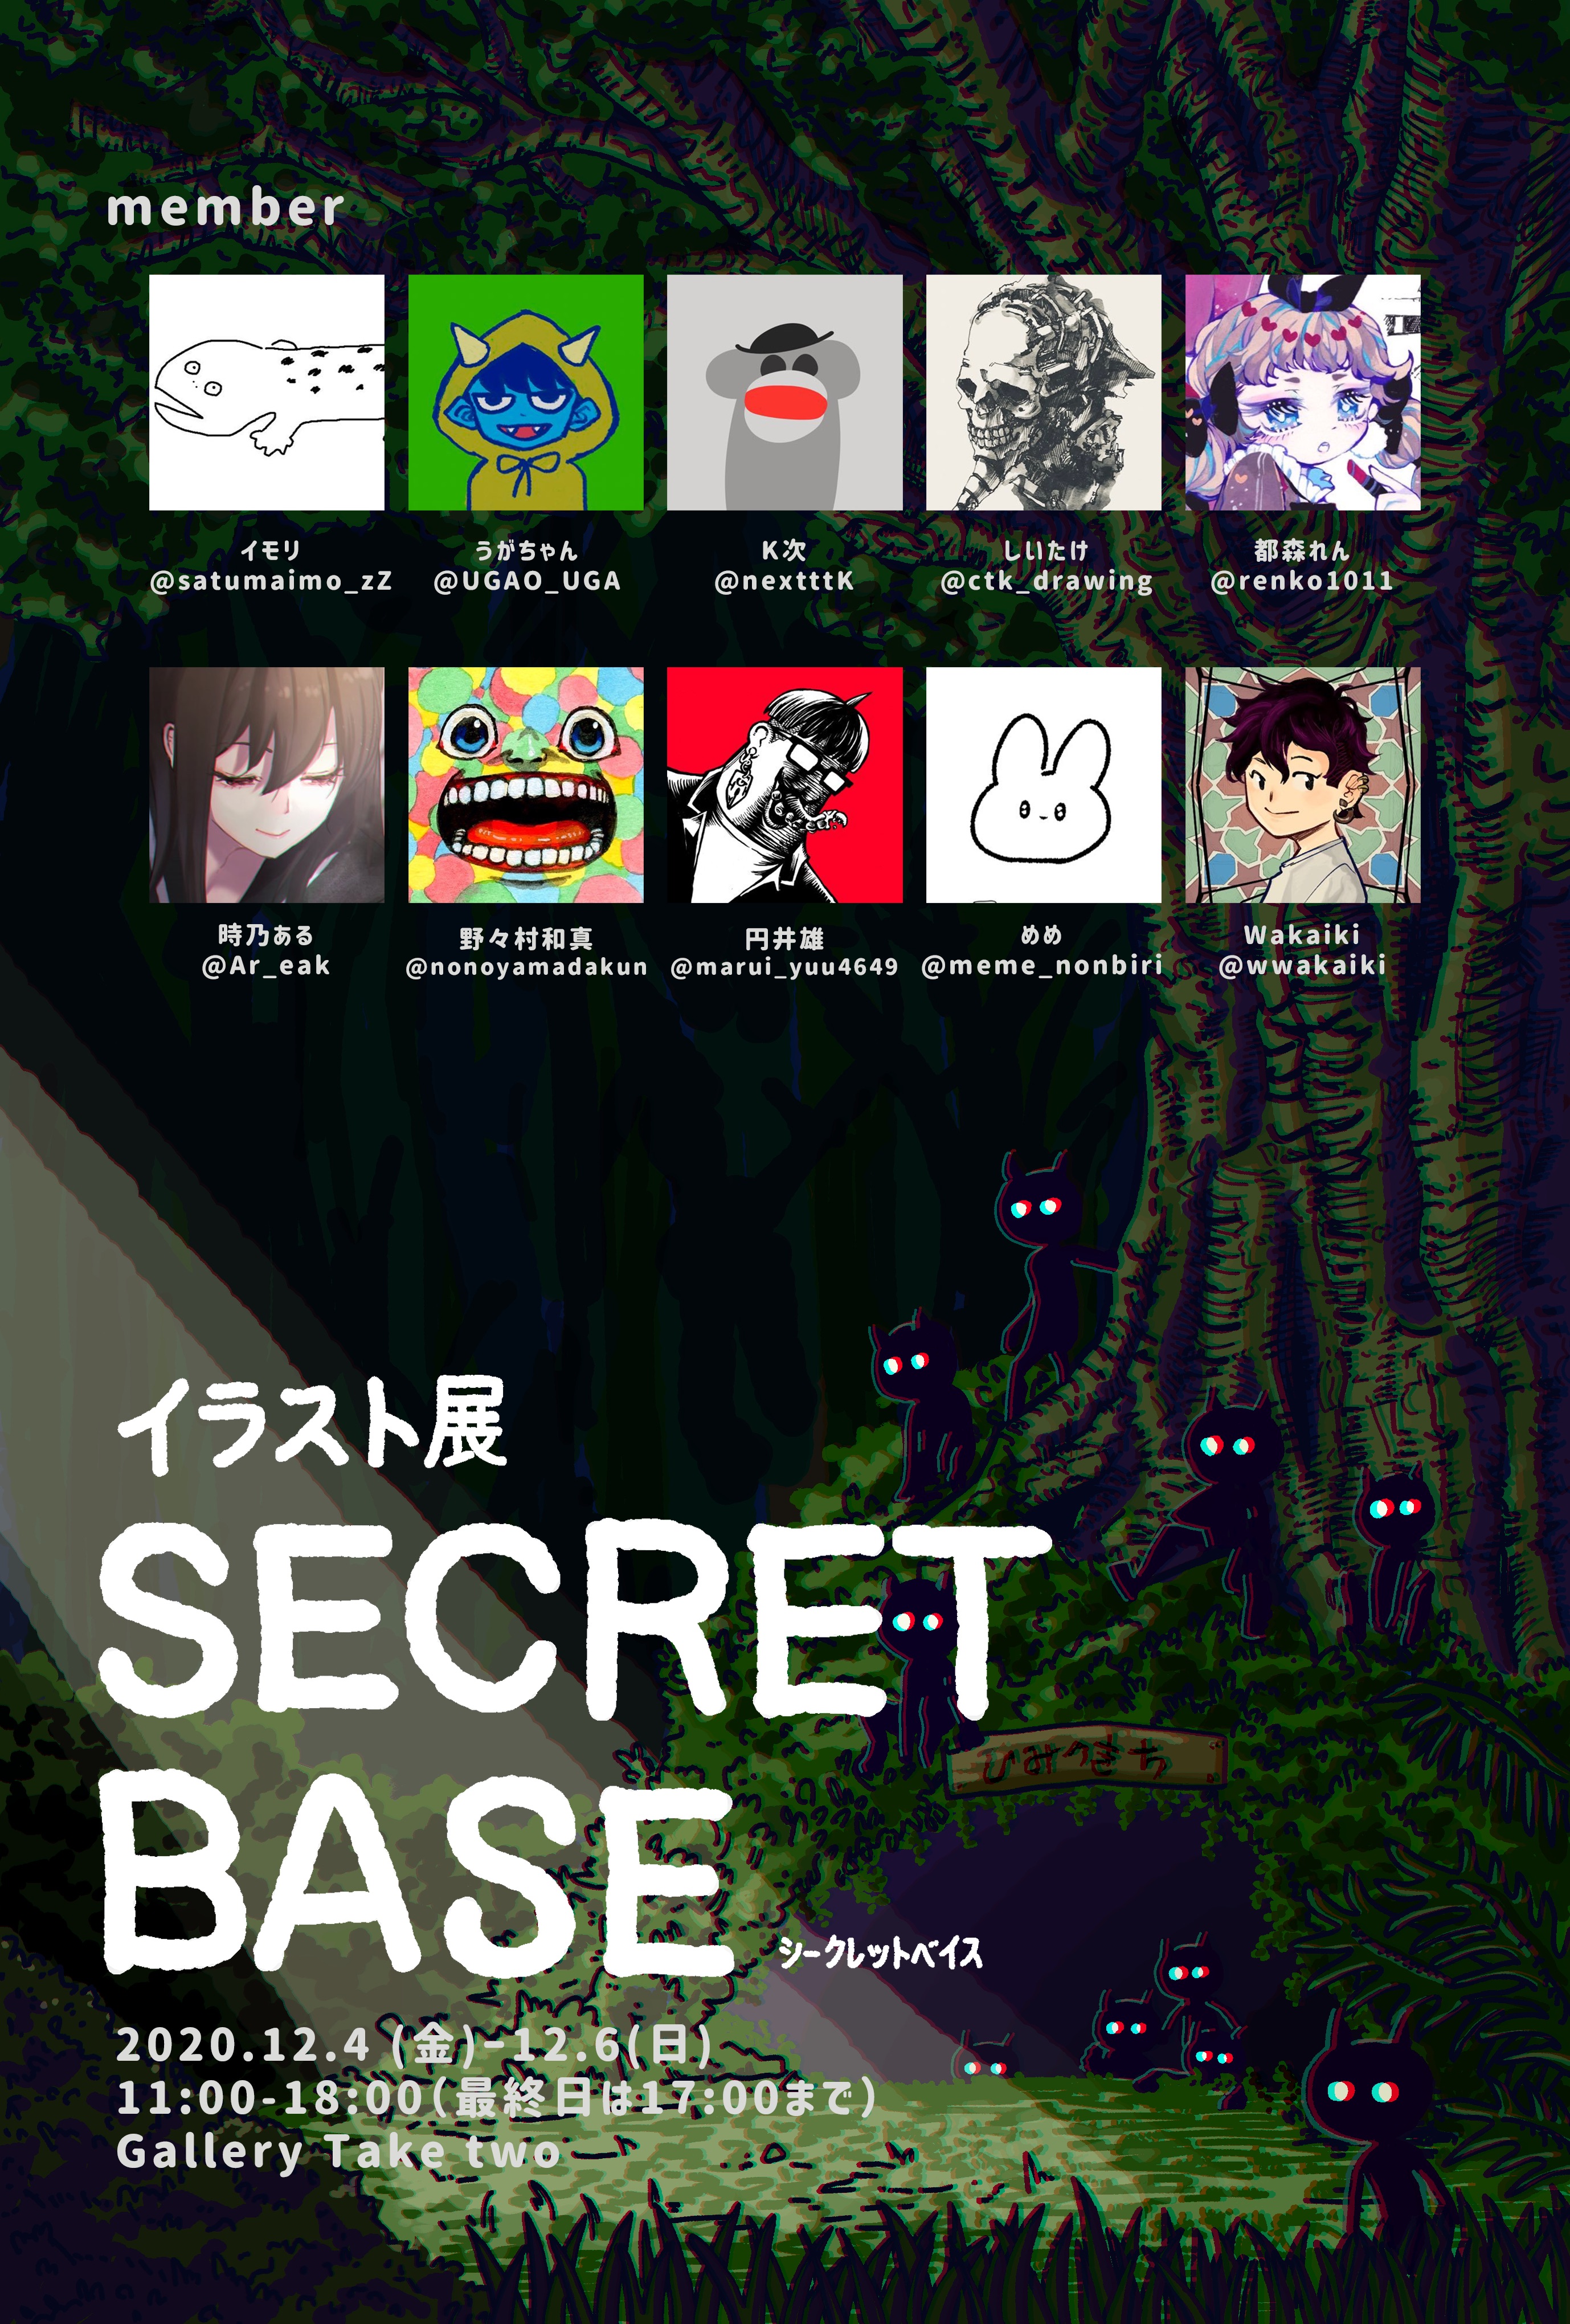 イラスト展 Secret Base Secret Base Art Twitter